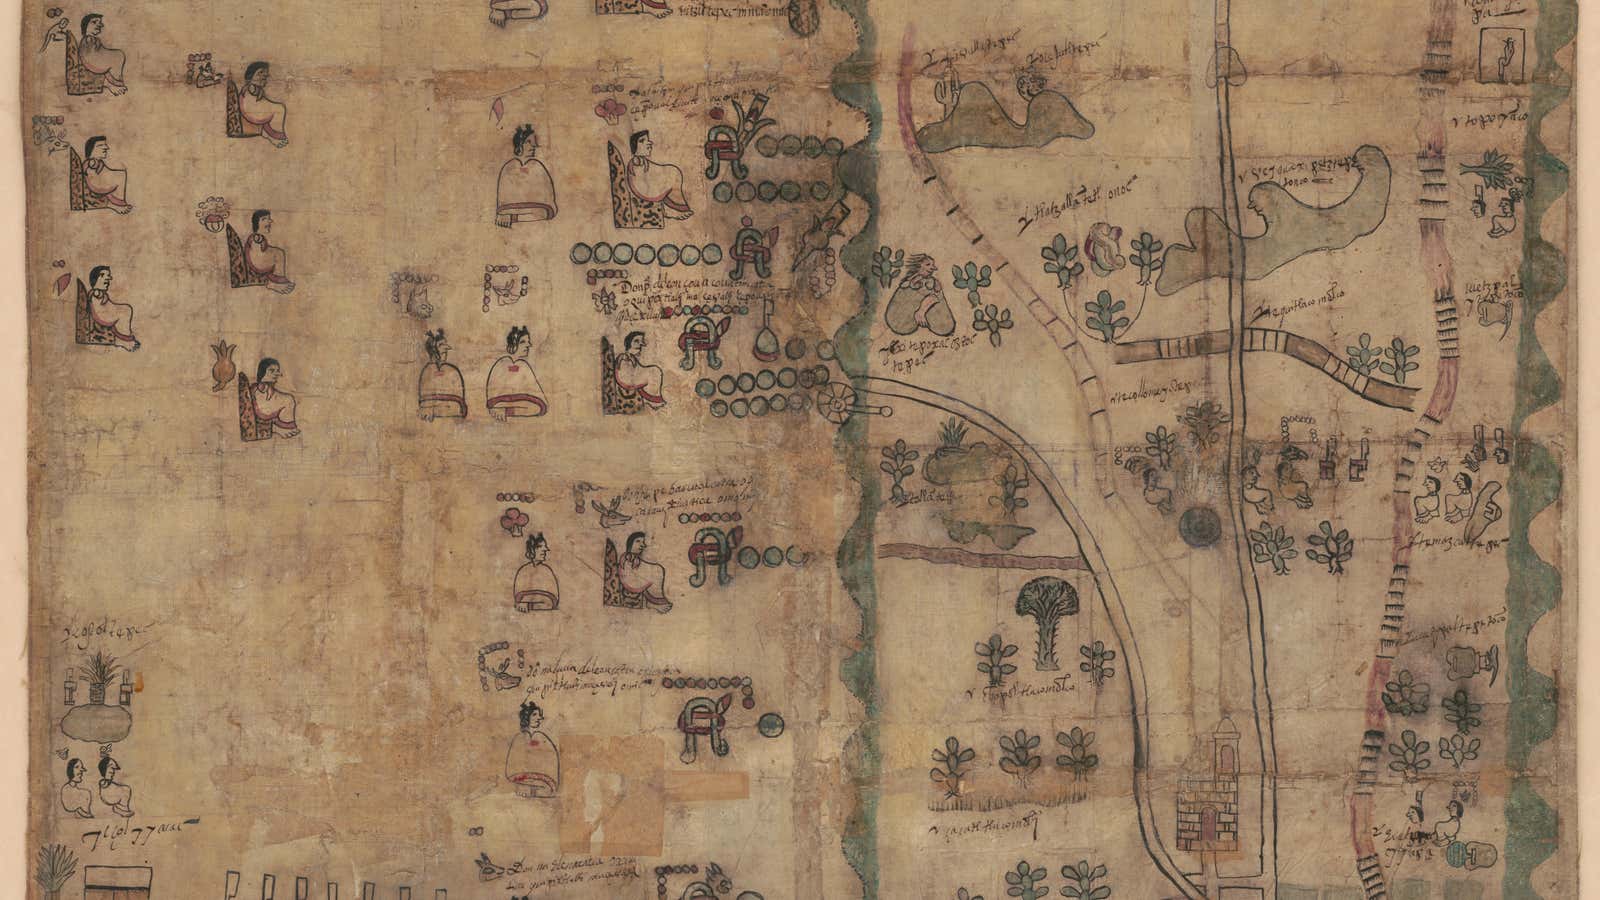 The Codex Quetzalecatzin